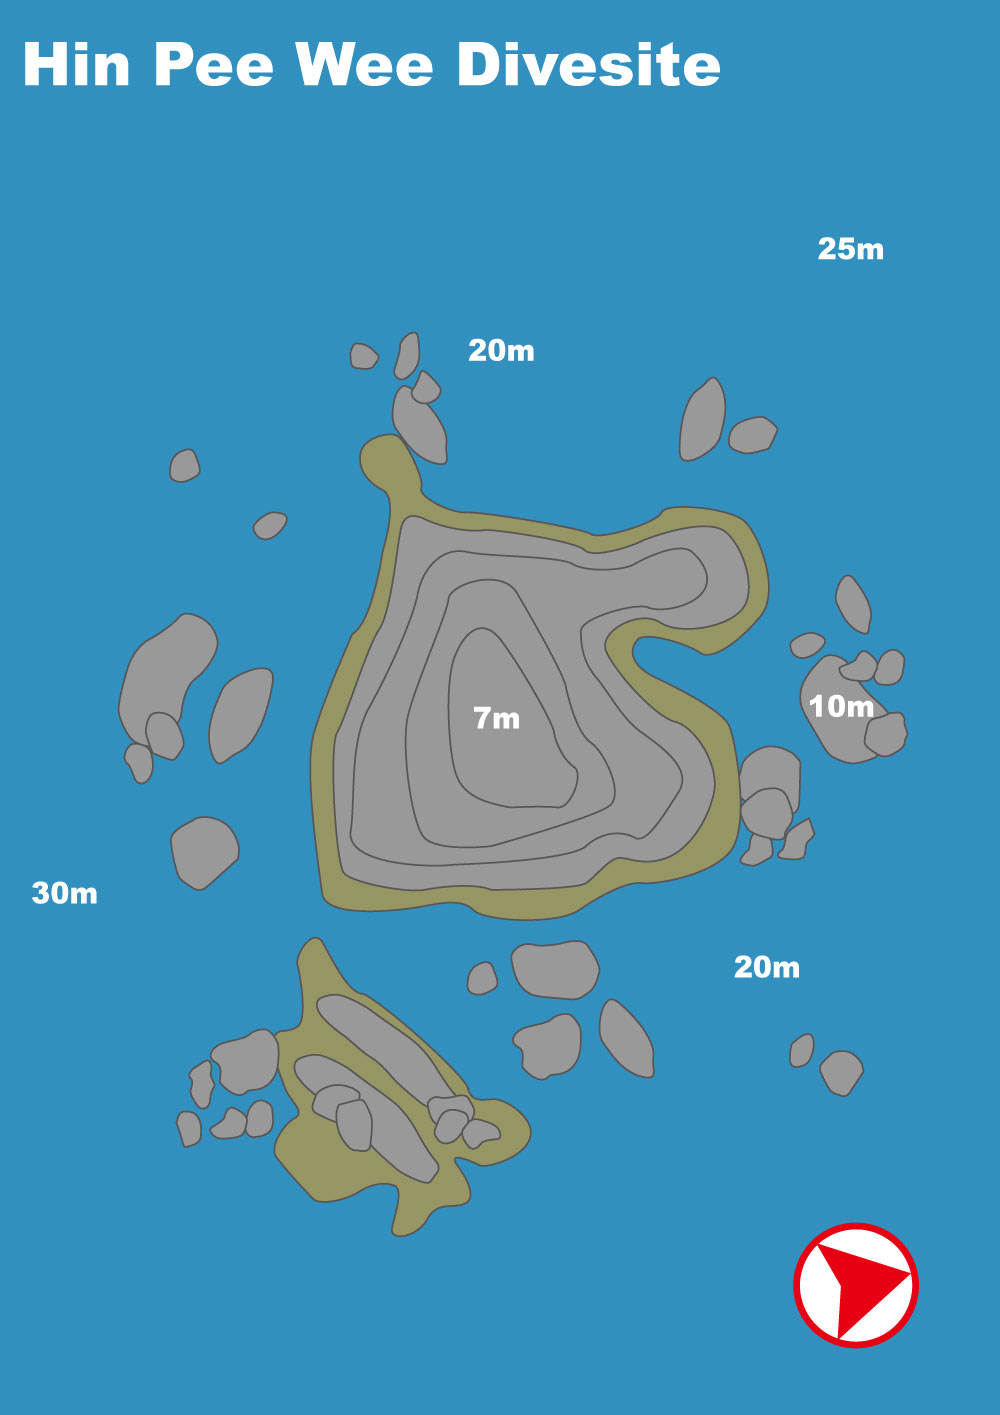 イメージ／タオ島ダイビングポイントマップ／ヒンピーウィー（パソコン用の画像）